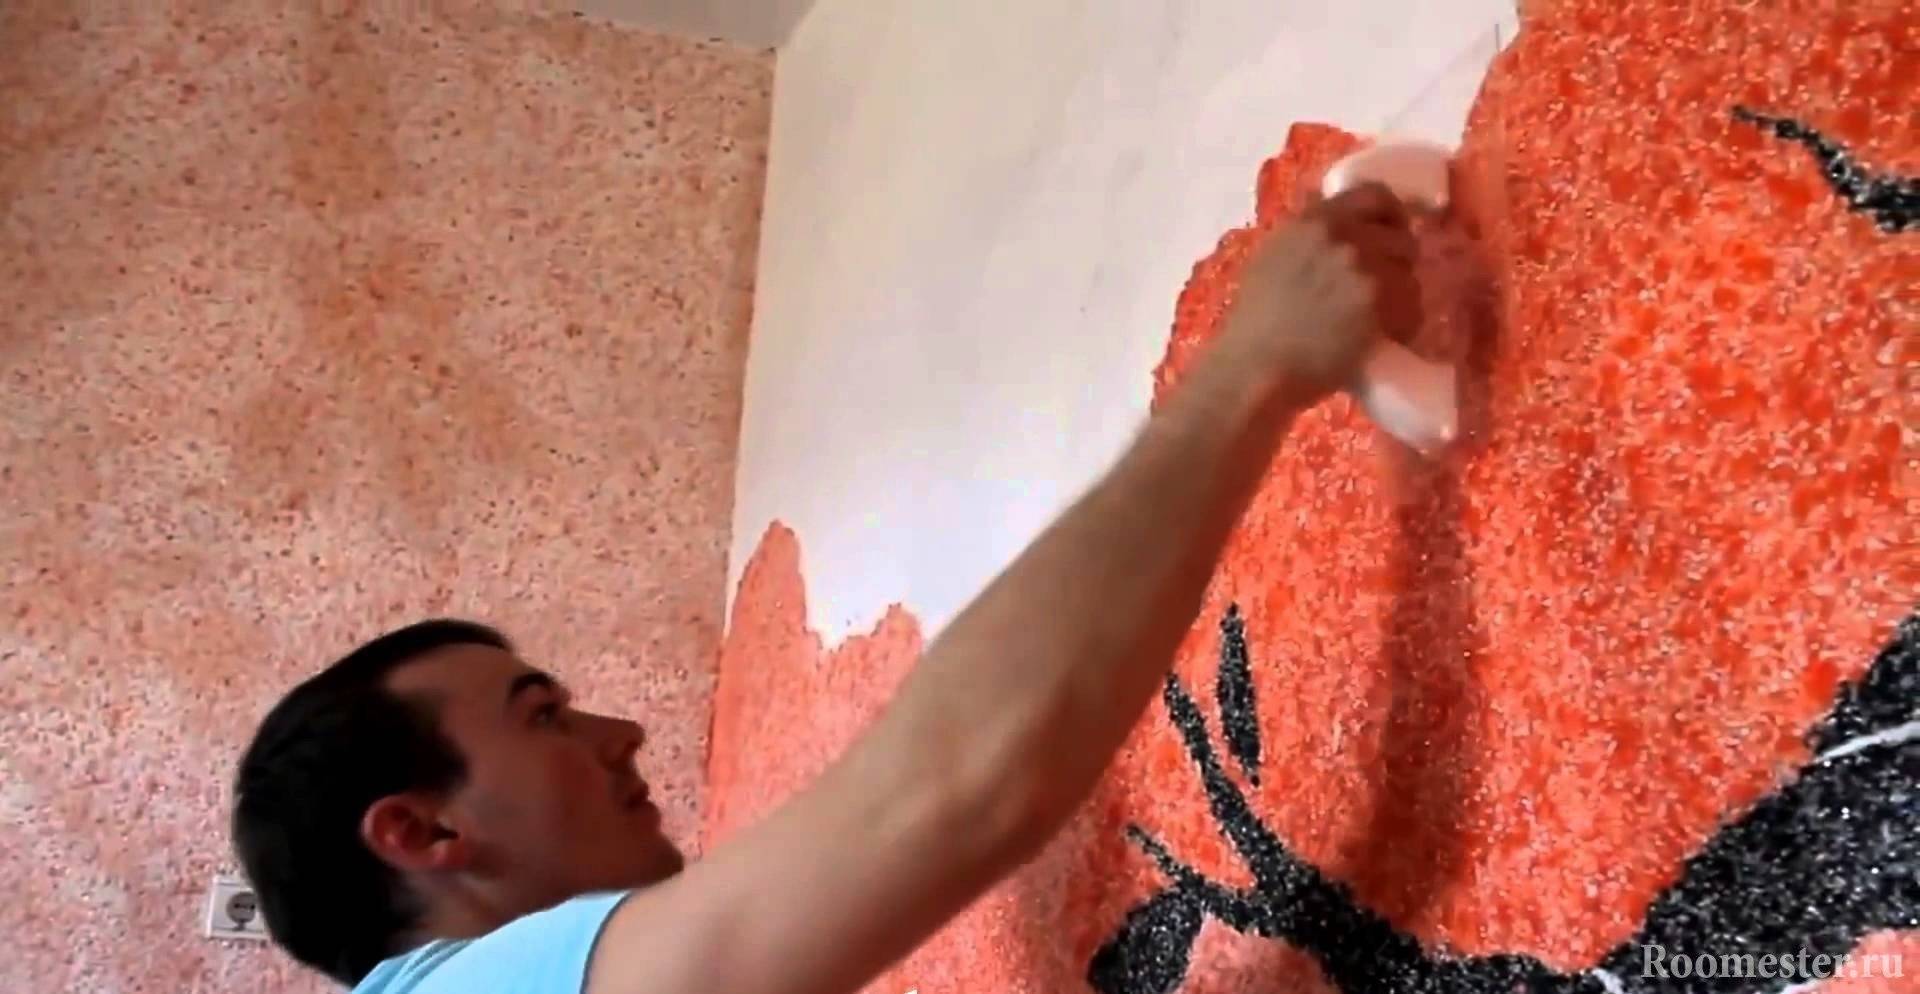 Интерьер мастер-класс папье-маше рисование и живопись жидкие обои своими руками мк бумага гипс цемент клей краска